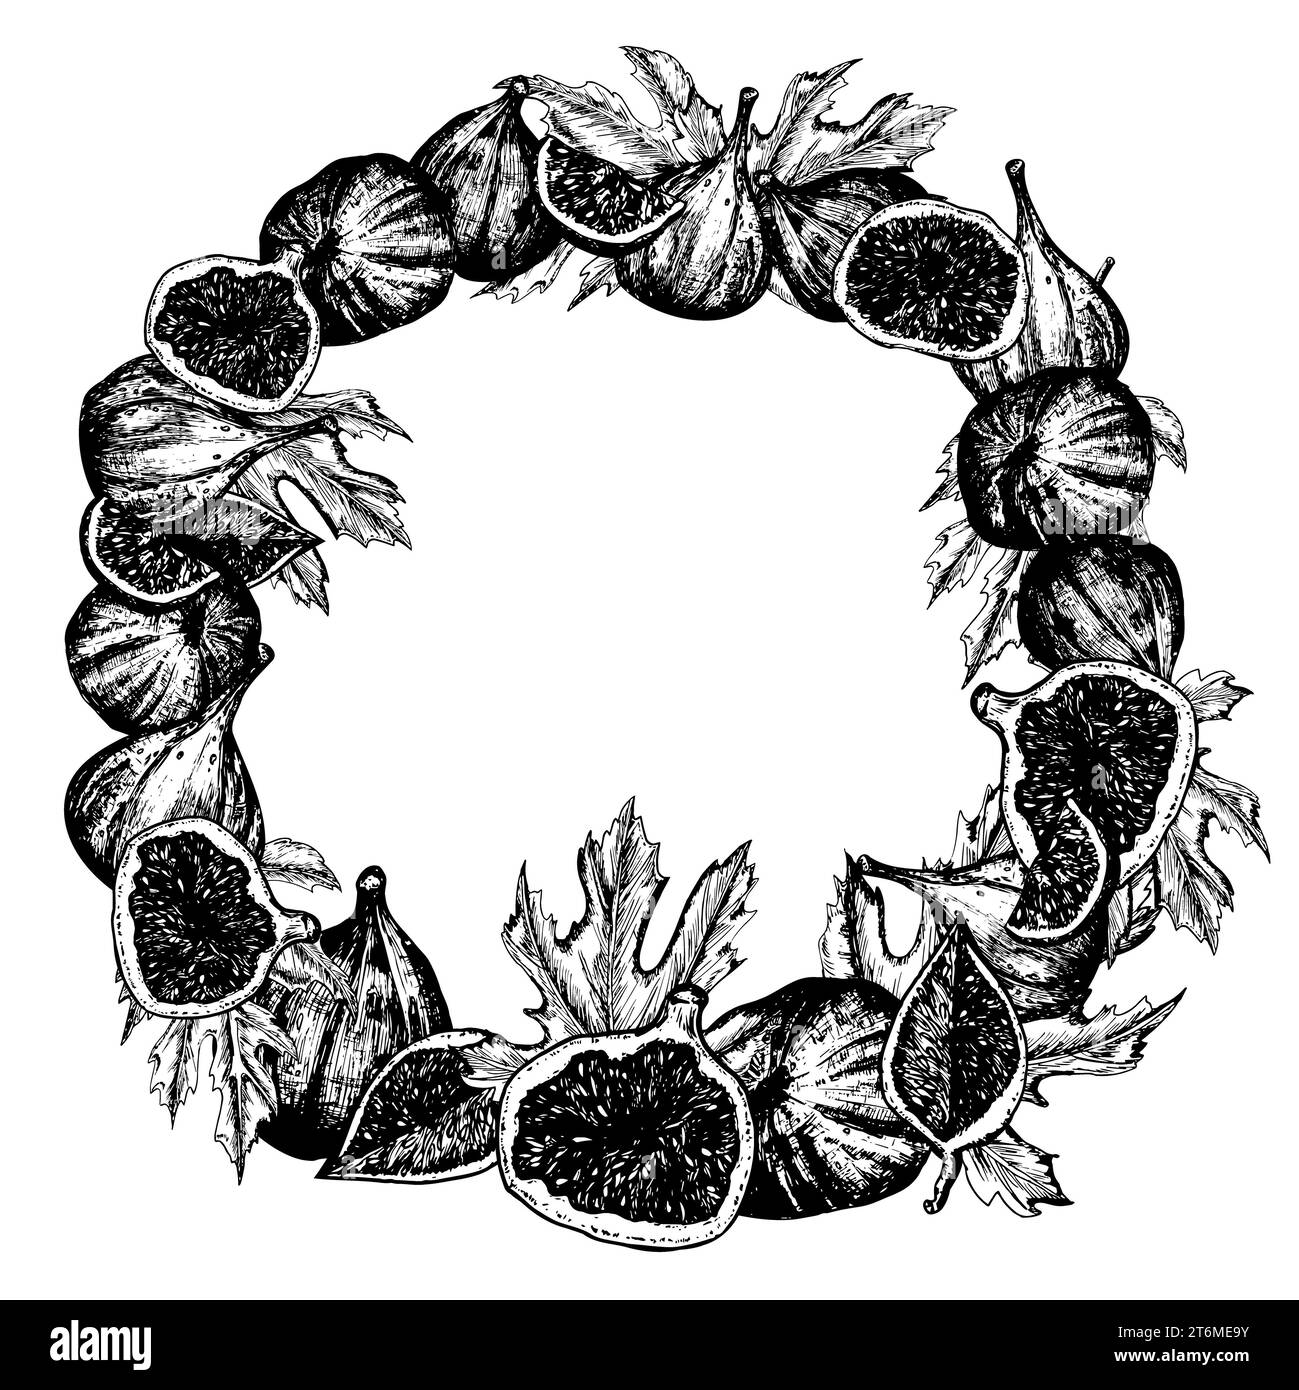 Illustrazione con inchiostro bianco e nero disegnato a mano. Corona circolare con fichi freschi, foglie e fette. Illustrazione vettoriale Foto Stock